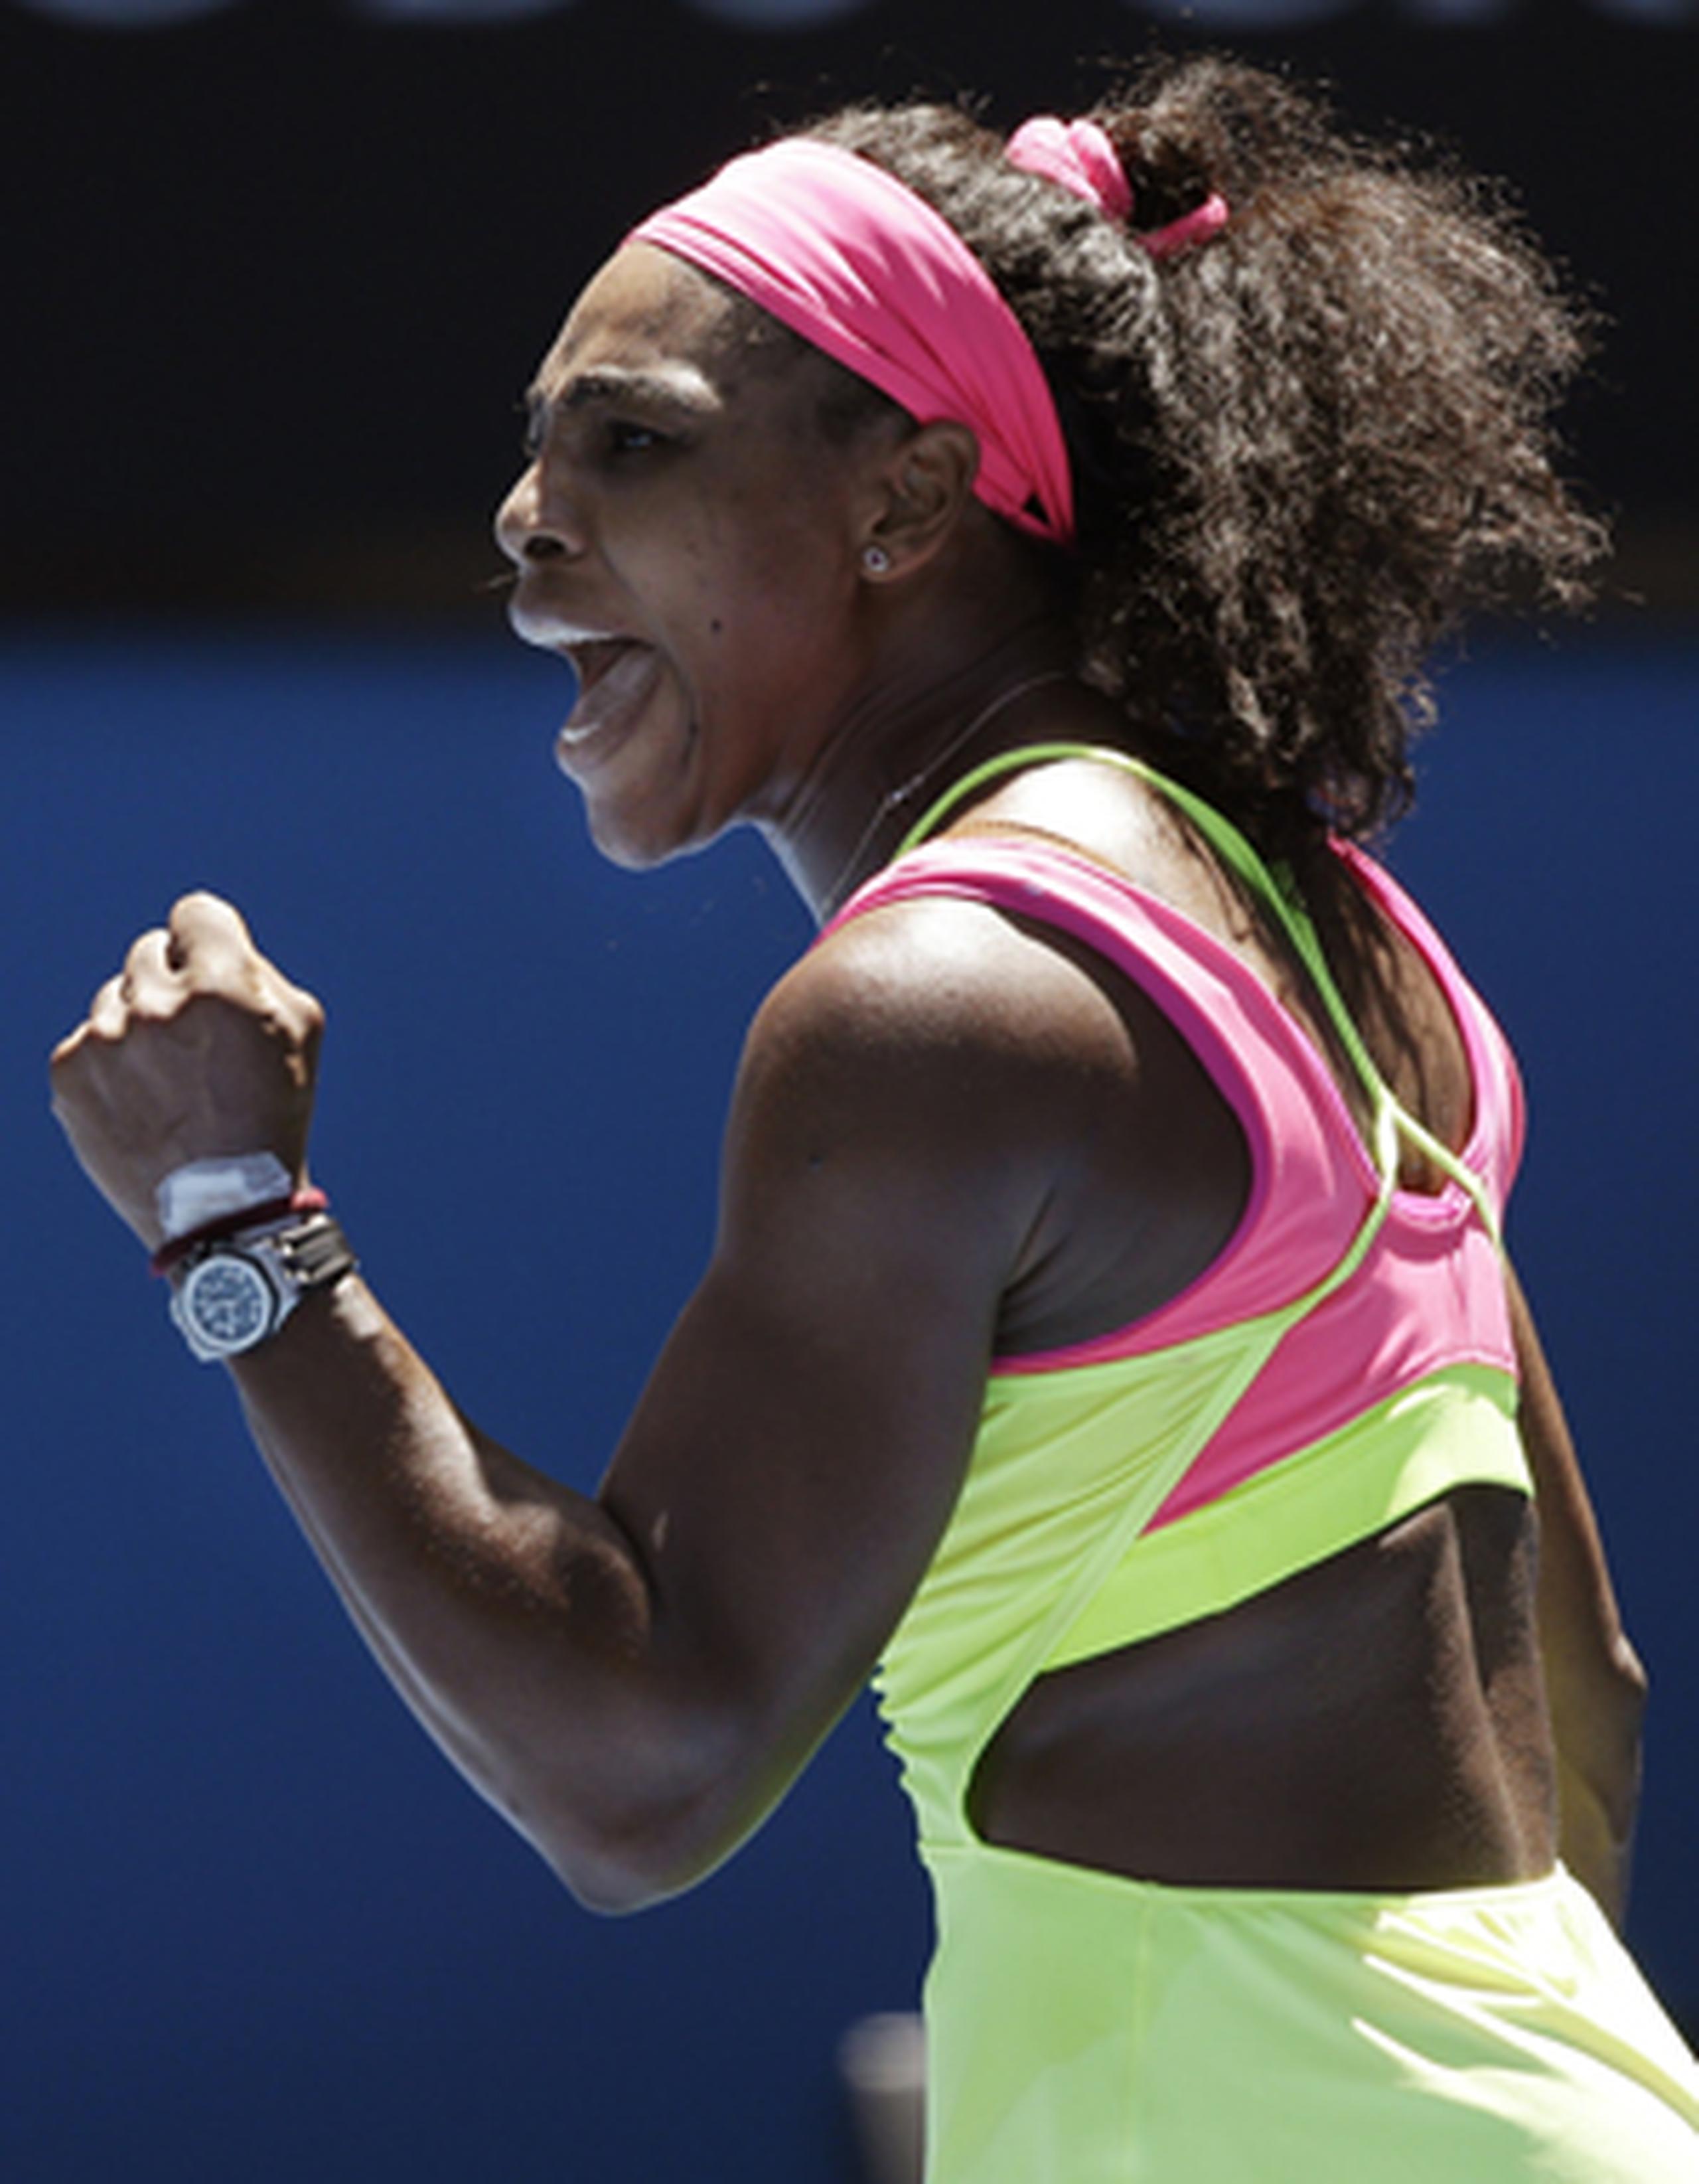 Cuando vi el marcador (de Venus) pensé: 'Wow, está ganando, yo puedo hacerlo mejor''', señaló Serena tras su victoria. "Siempre nos motivamos una a la otra". (AP)